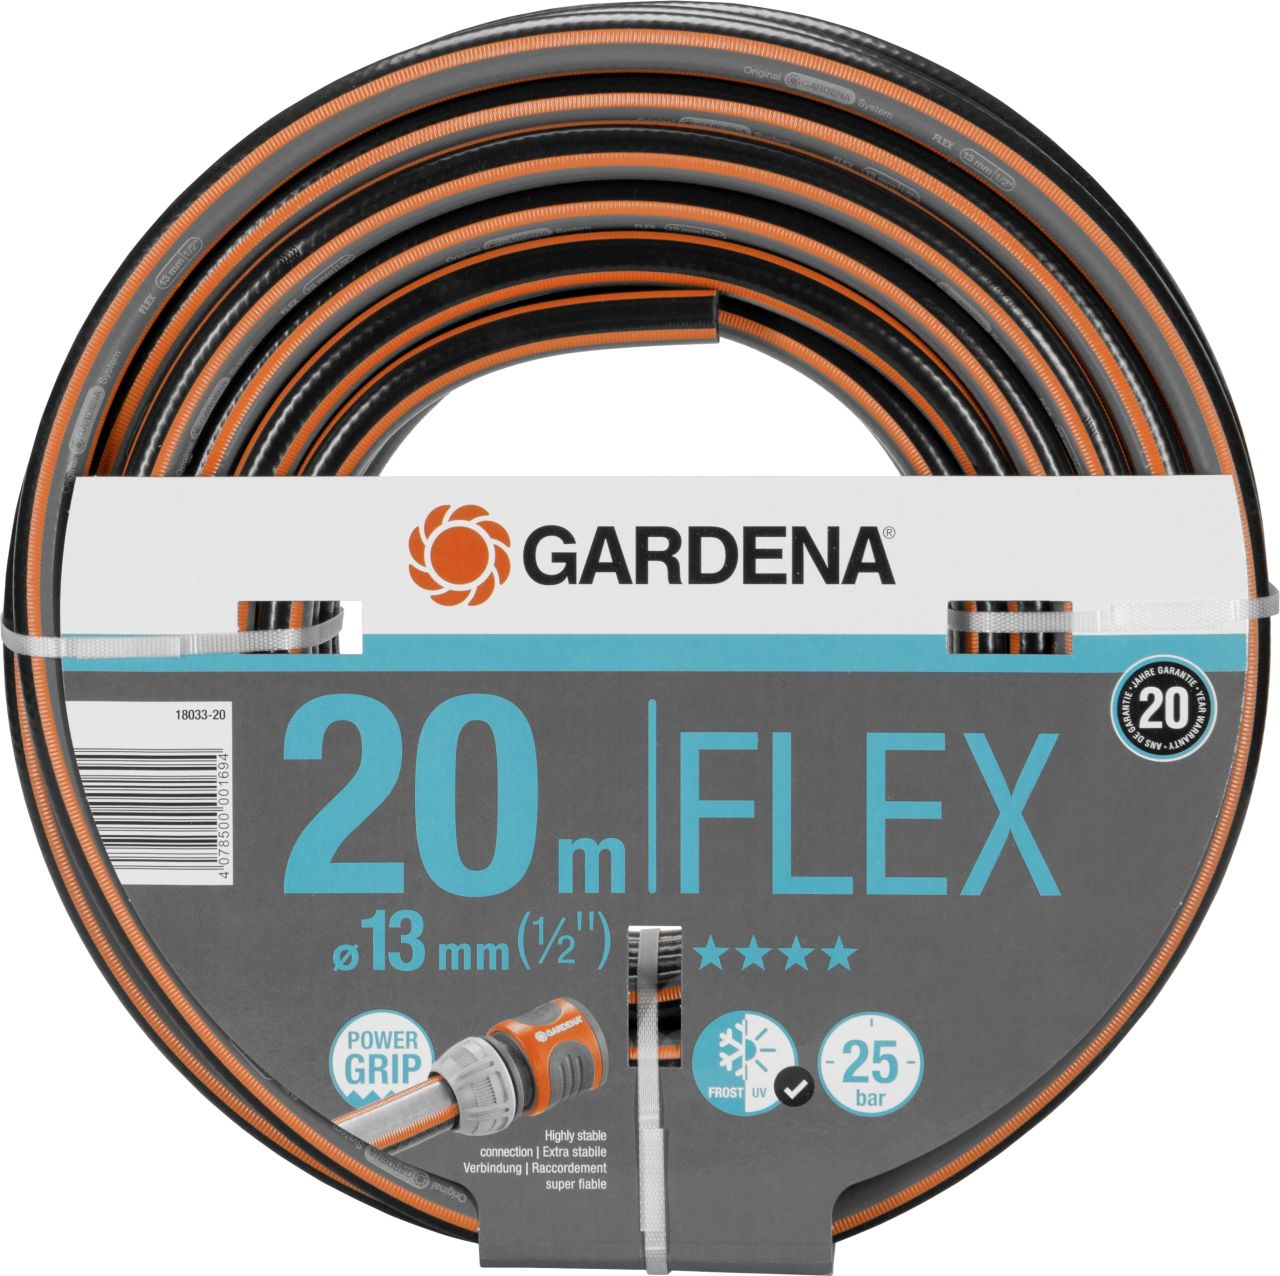 Gardena Schlauch Flex Comfort 20 m 13 mm (1/2) von Gardena